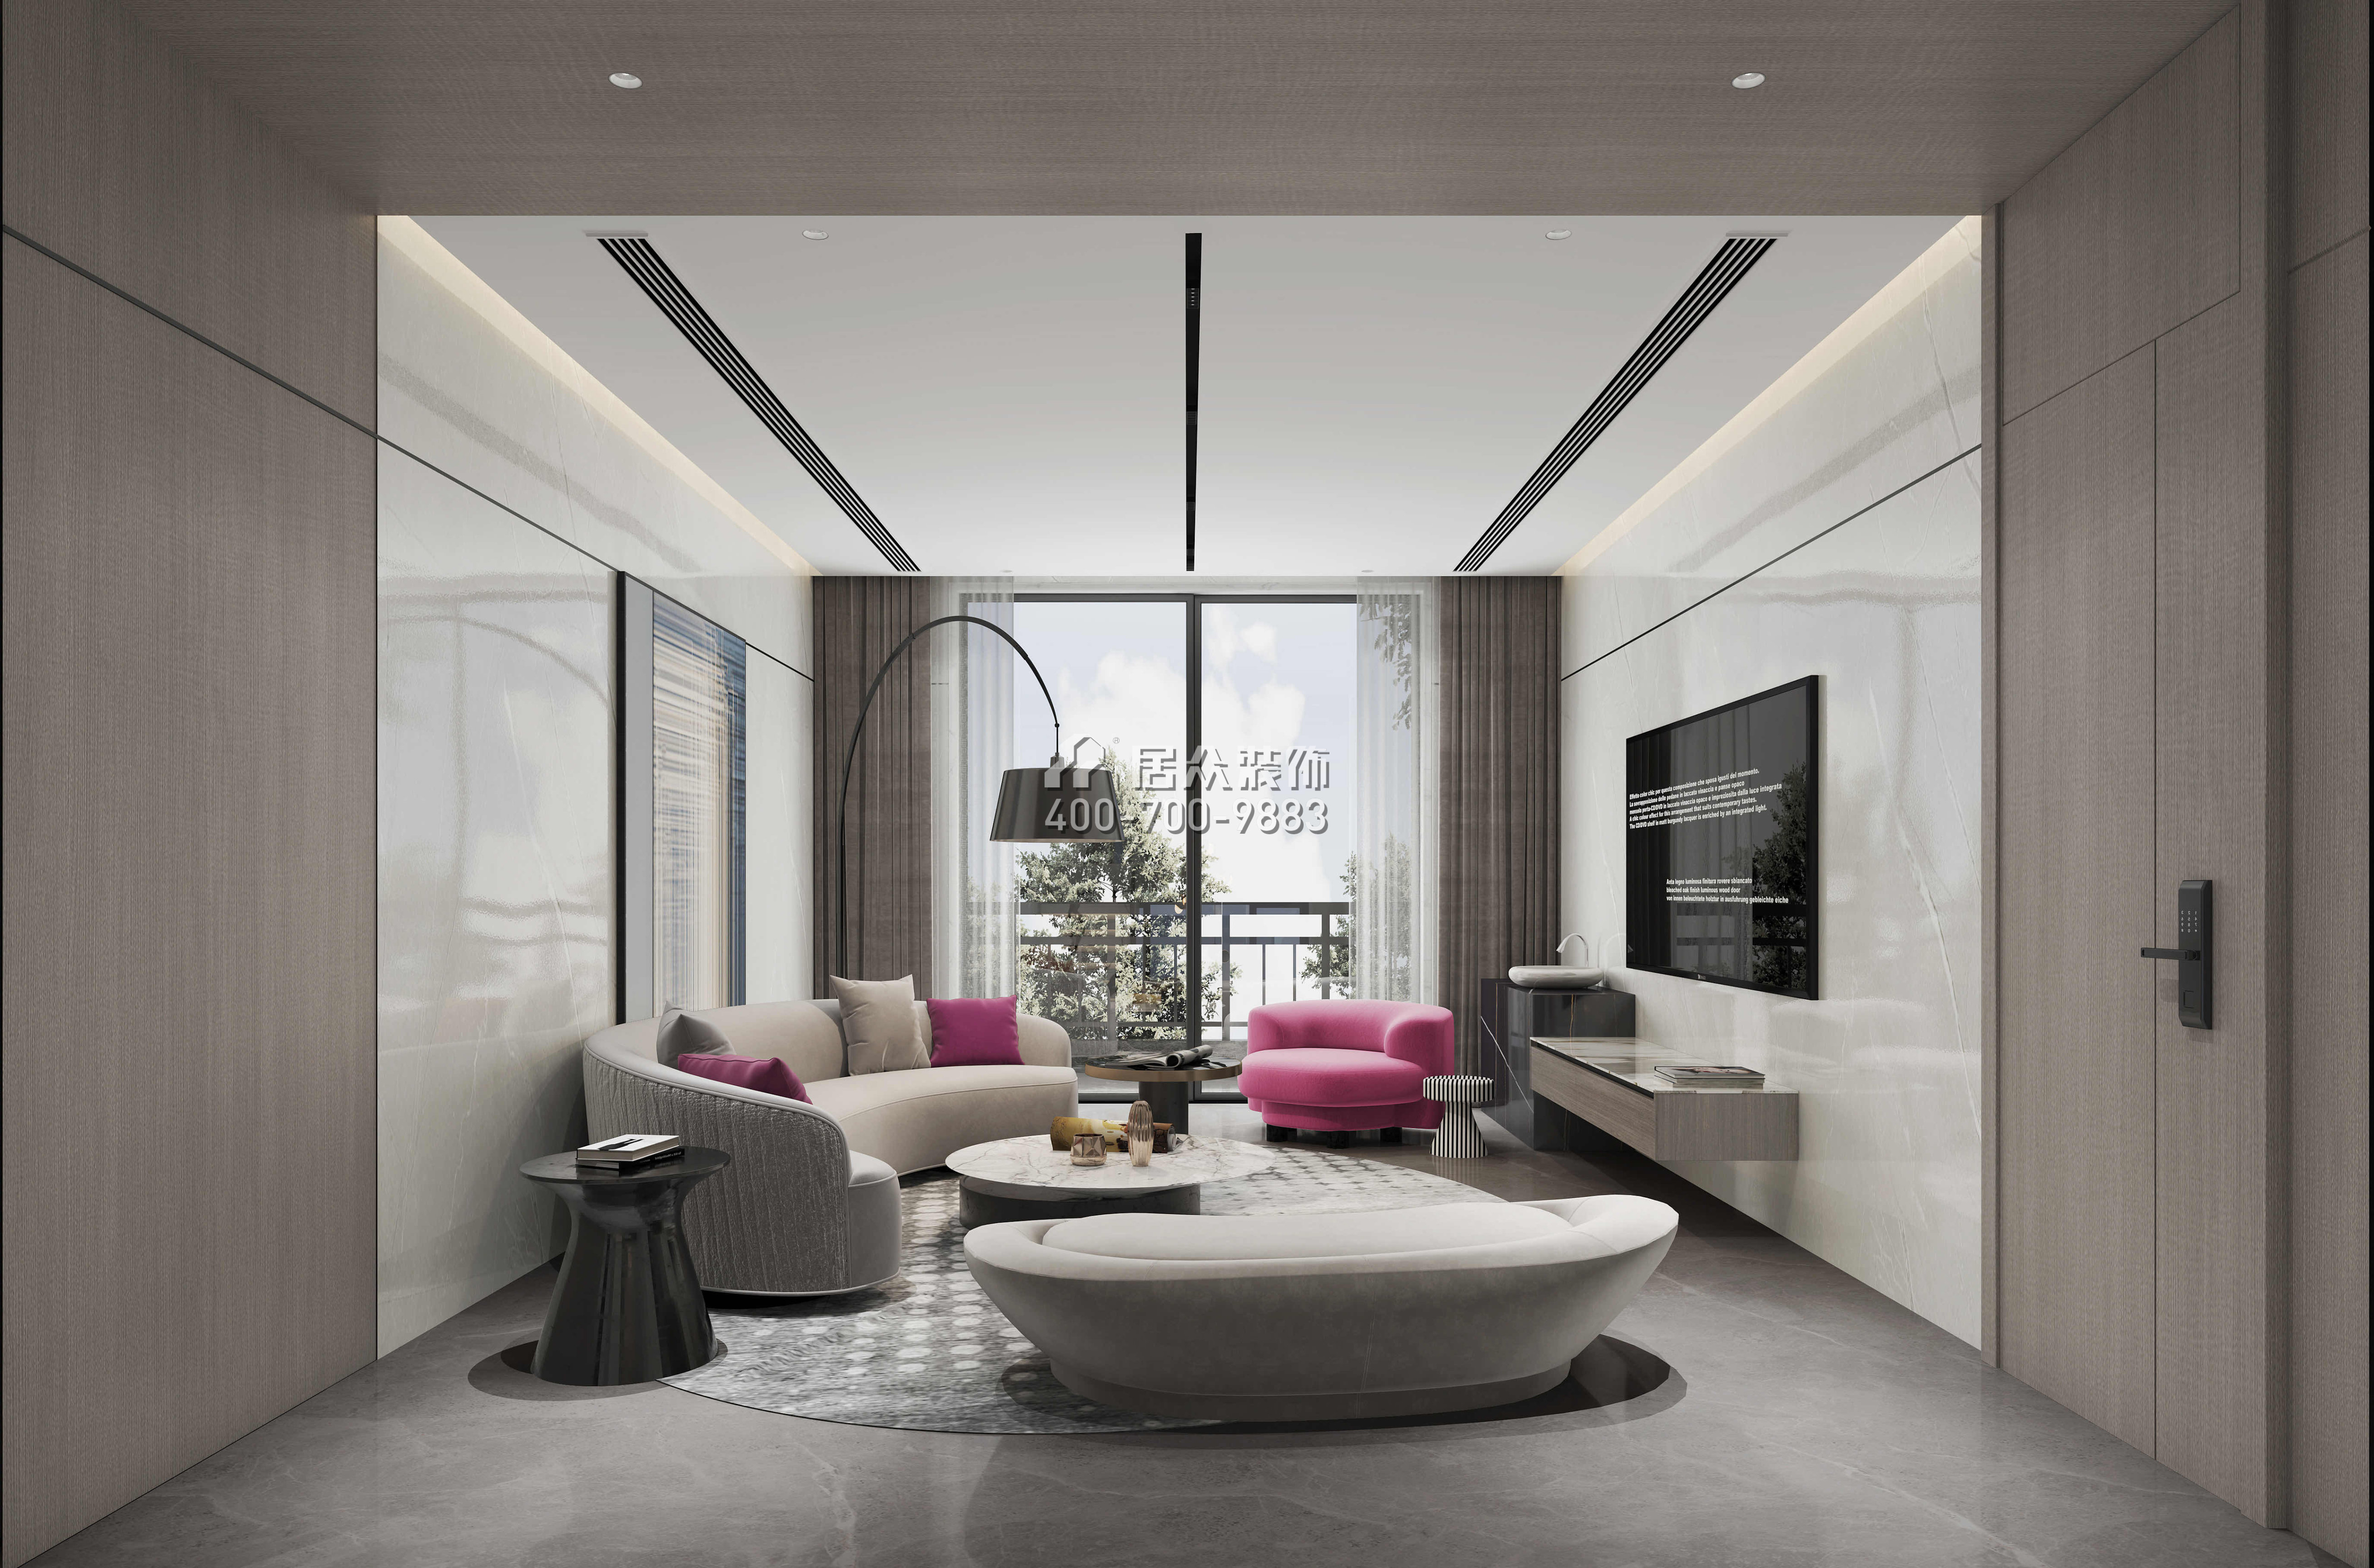 觀園1000平方米現代簡約風格別墅戶型客廳裝修效果圖